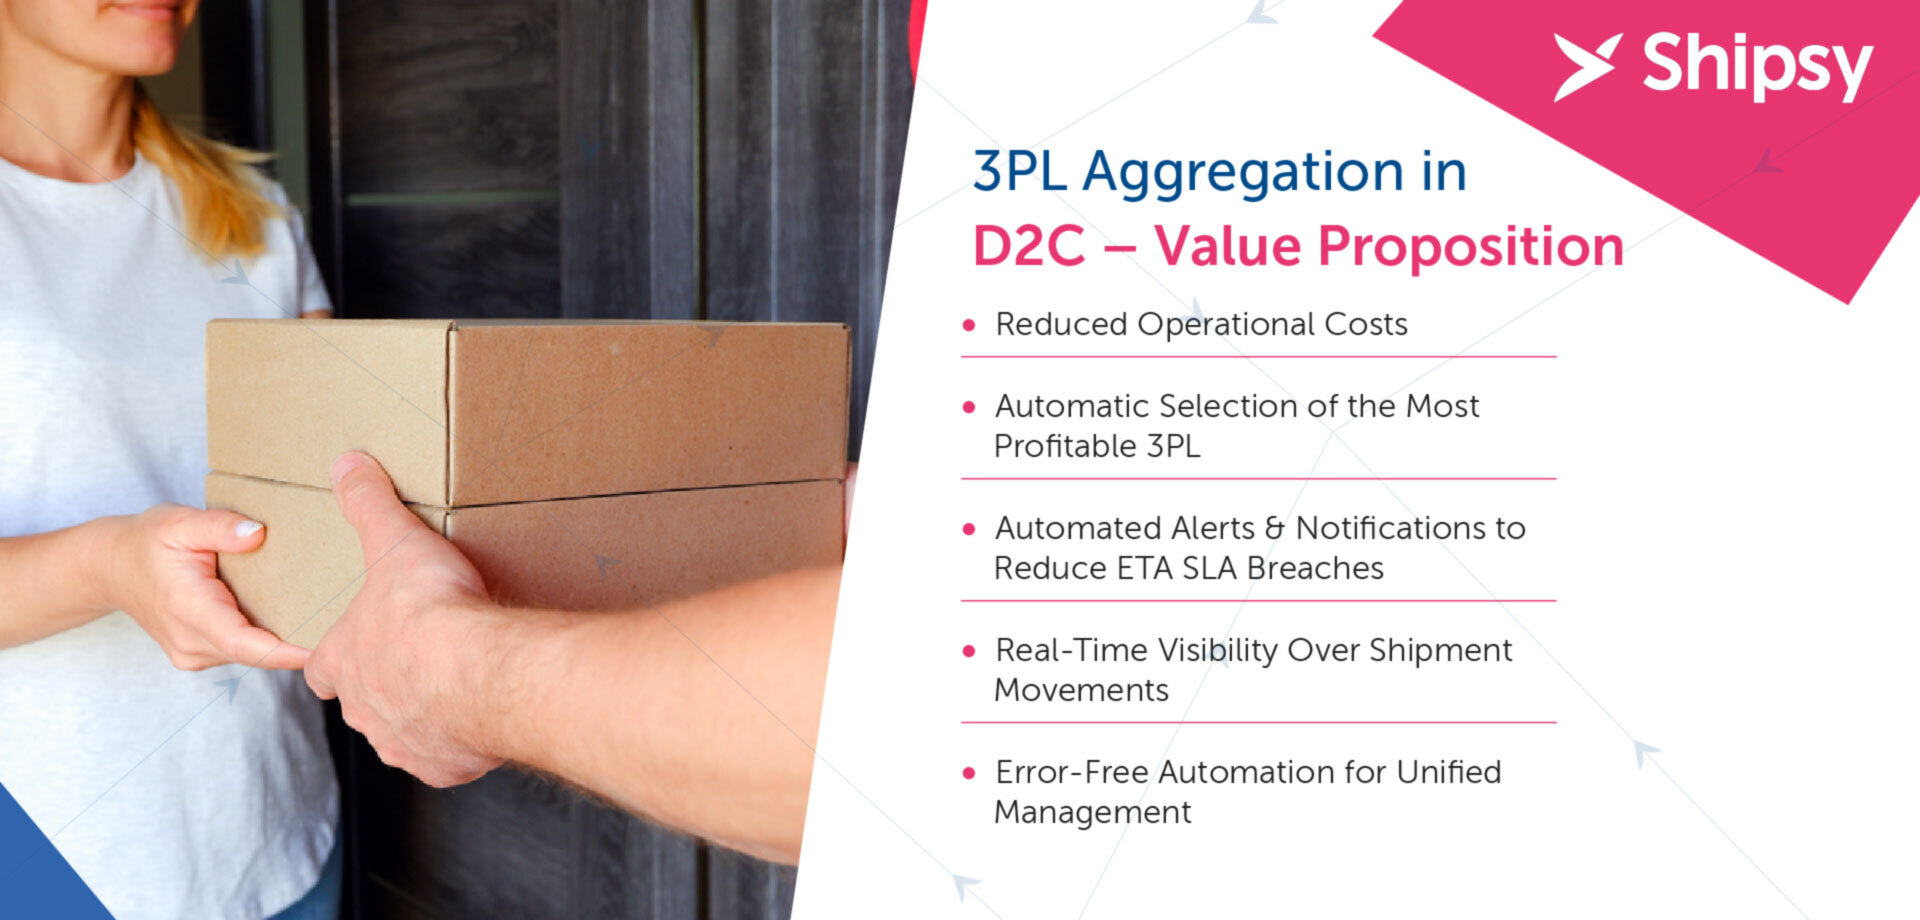 3PL aggregation platform for D2C